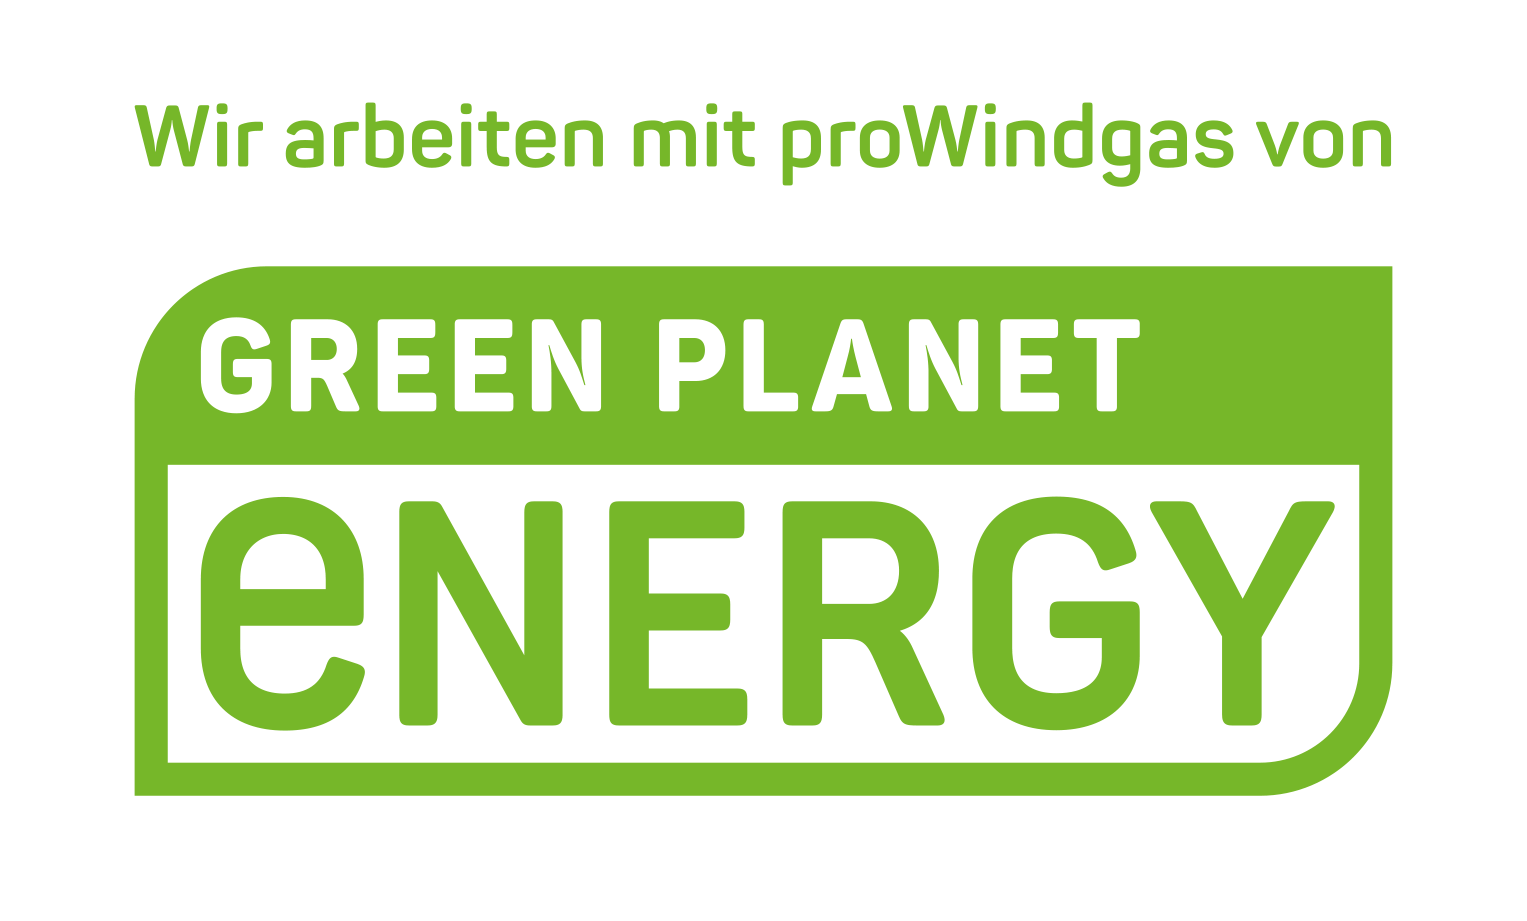 greenpeace logo windgas gr